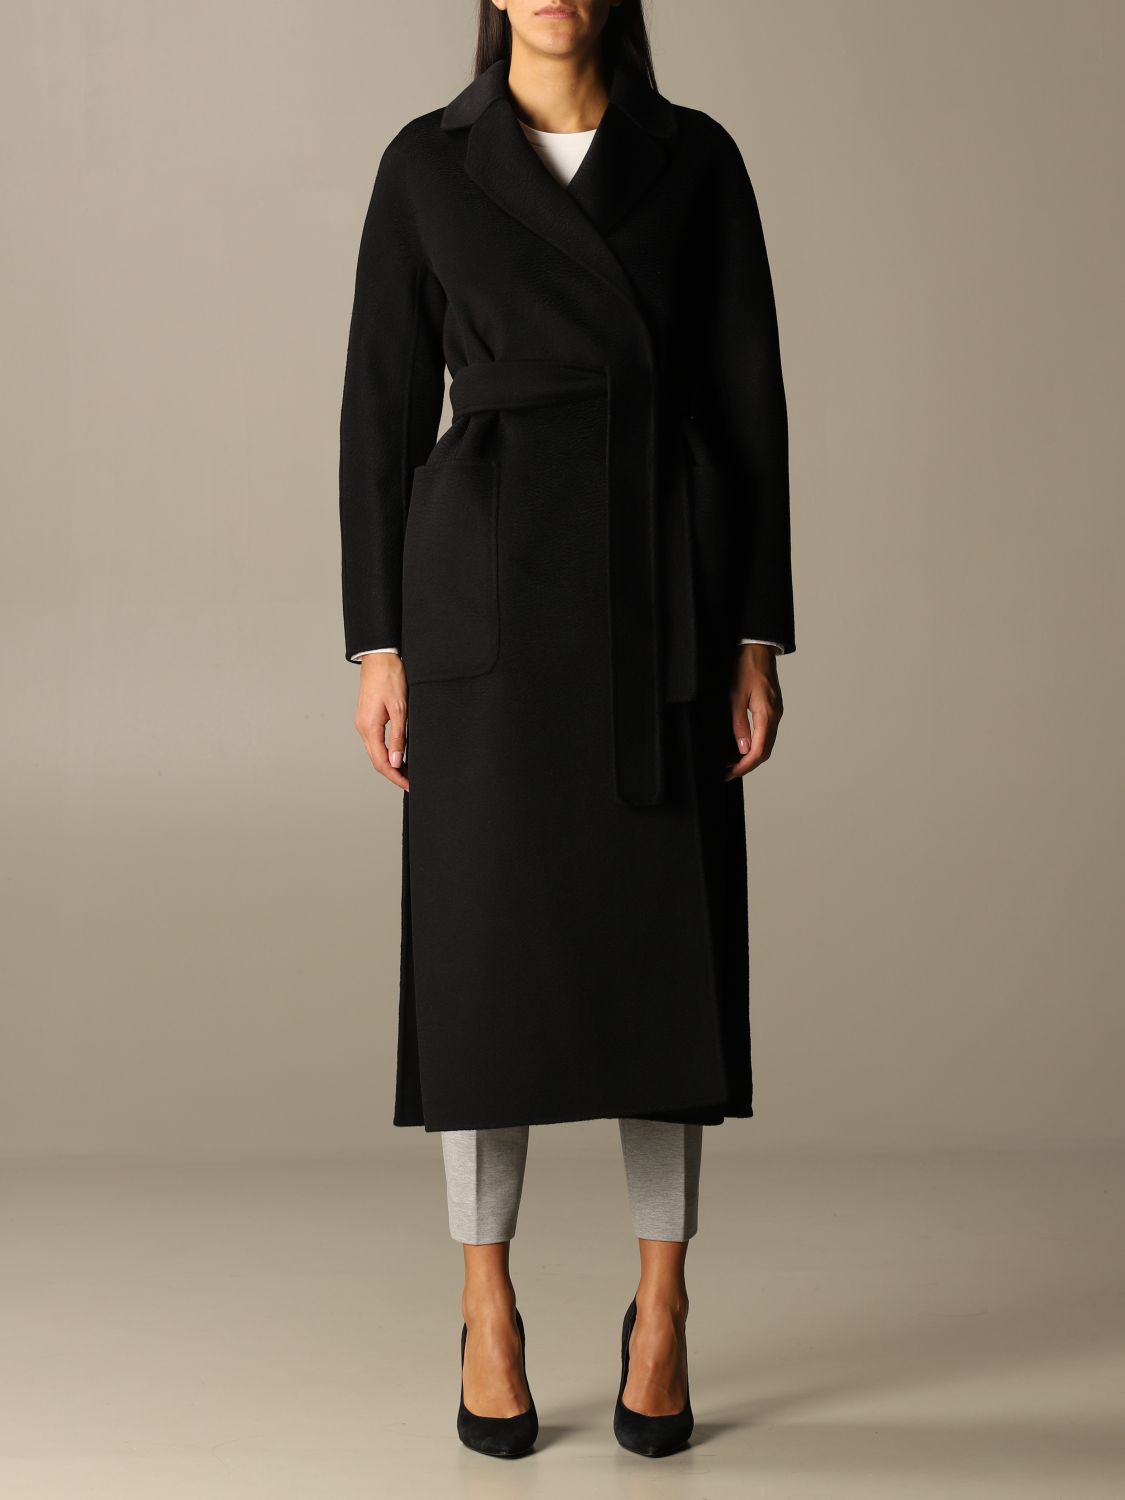 'S MAX MARA: S Max Mara dressing gown coat - Black | 'S Max Mara coat ...